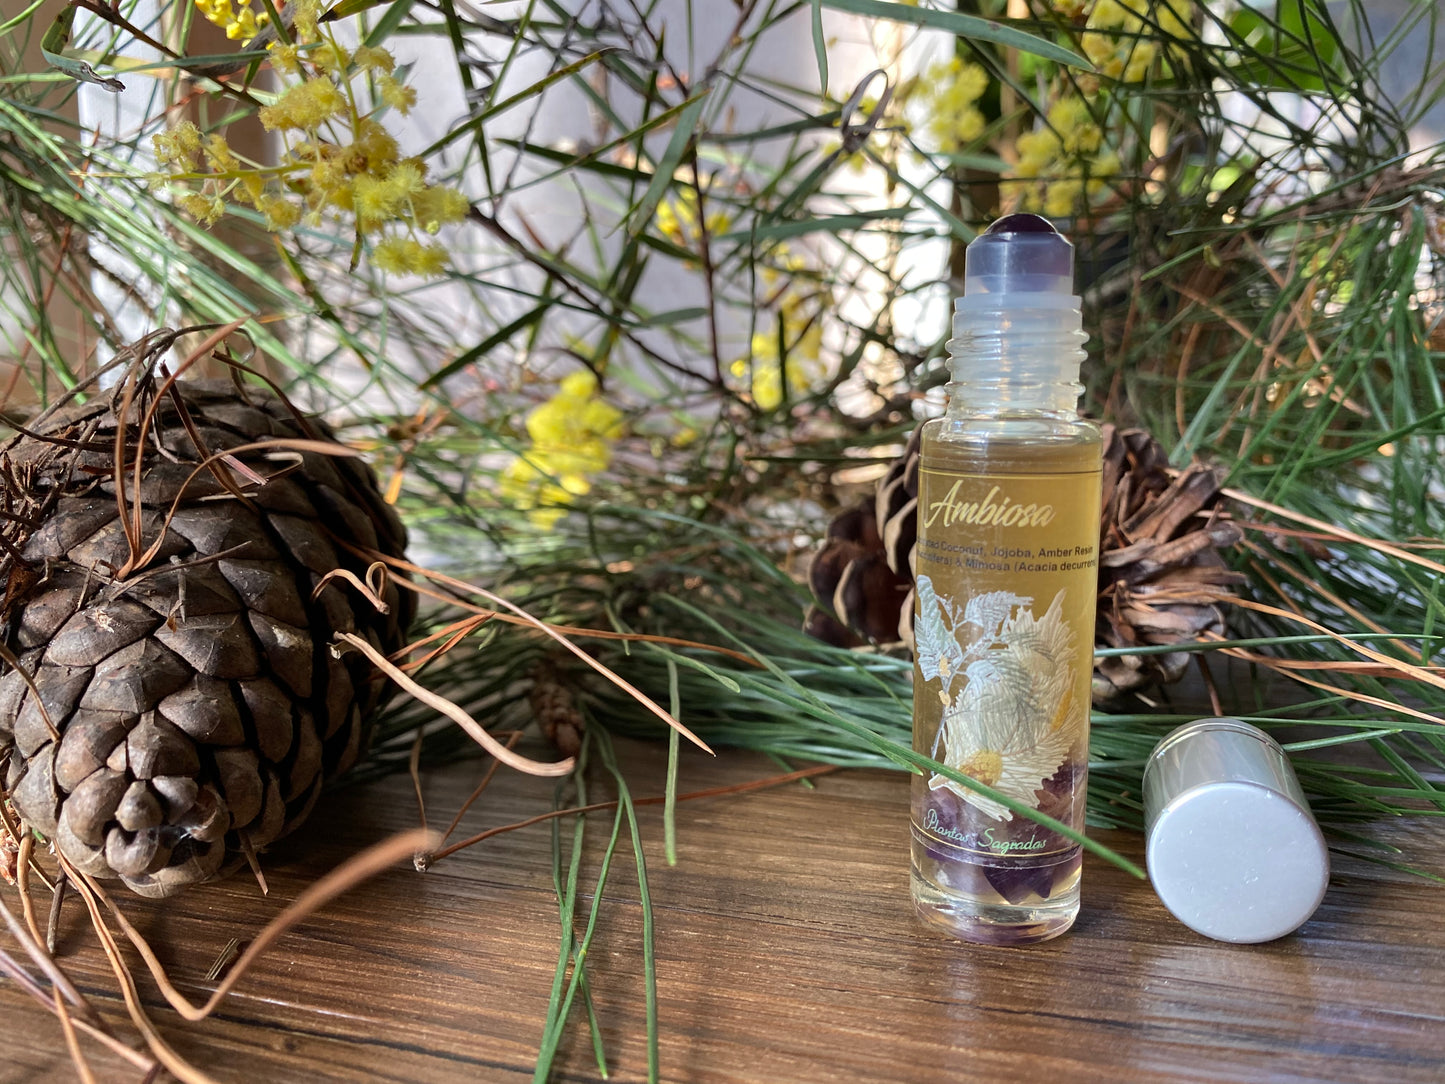 "Ambiosa" Amber & Mimosa Ritual Anointing Oil/Aromatherapy Perfume 10ml